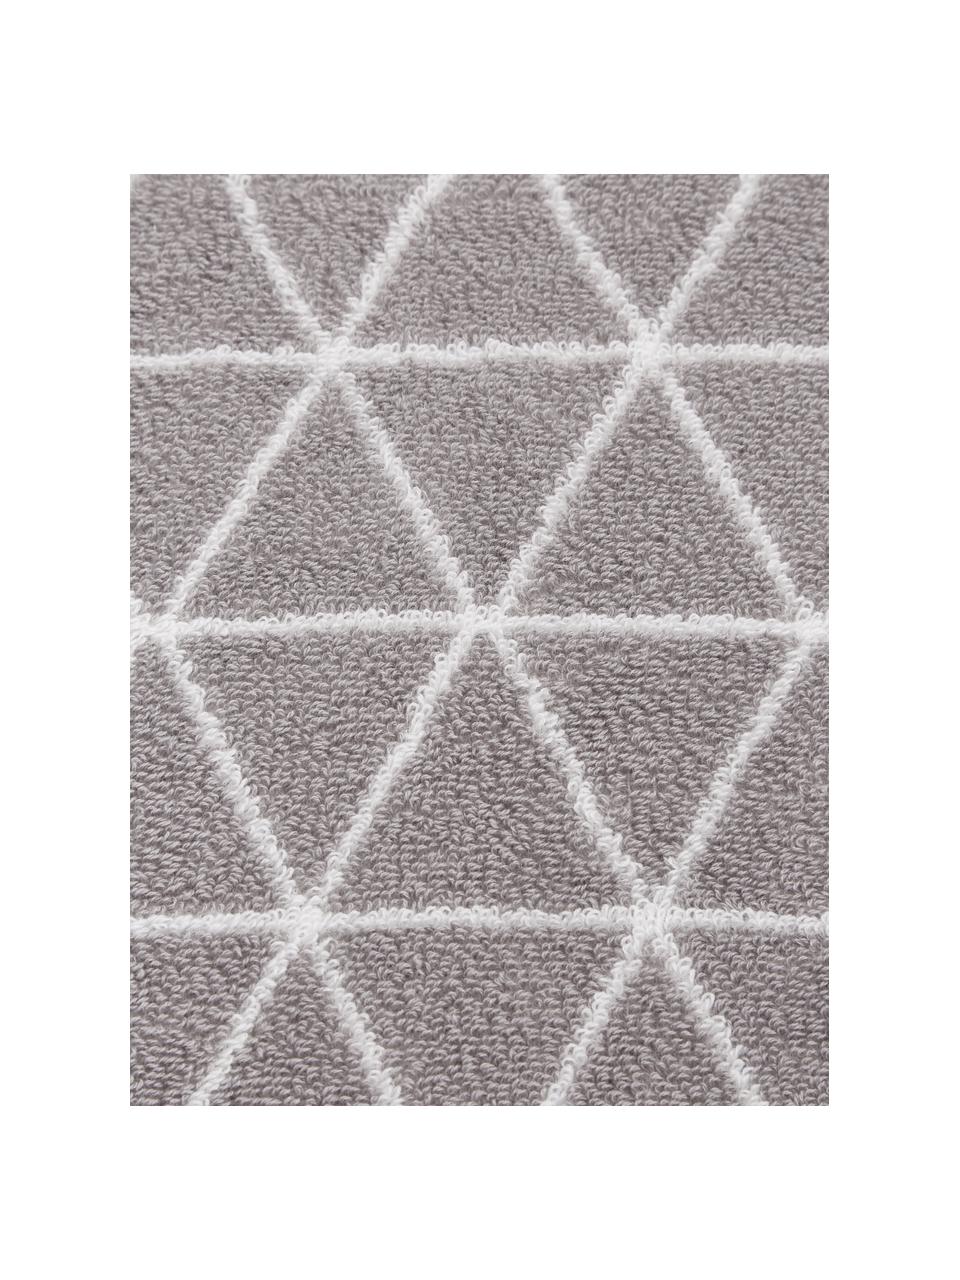 Obojstranný uterák s grafickým vzorom Elina, 2 ks, 100 % bavlna
Stredná gramáž 550 g/m², Sivobéžová, krémovobiela, Uterák, Š 50 x D 100 cm, 2 ks